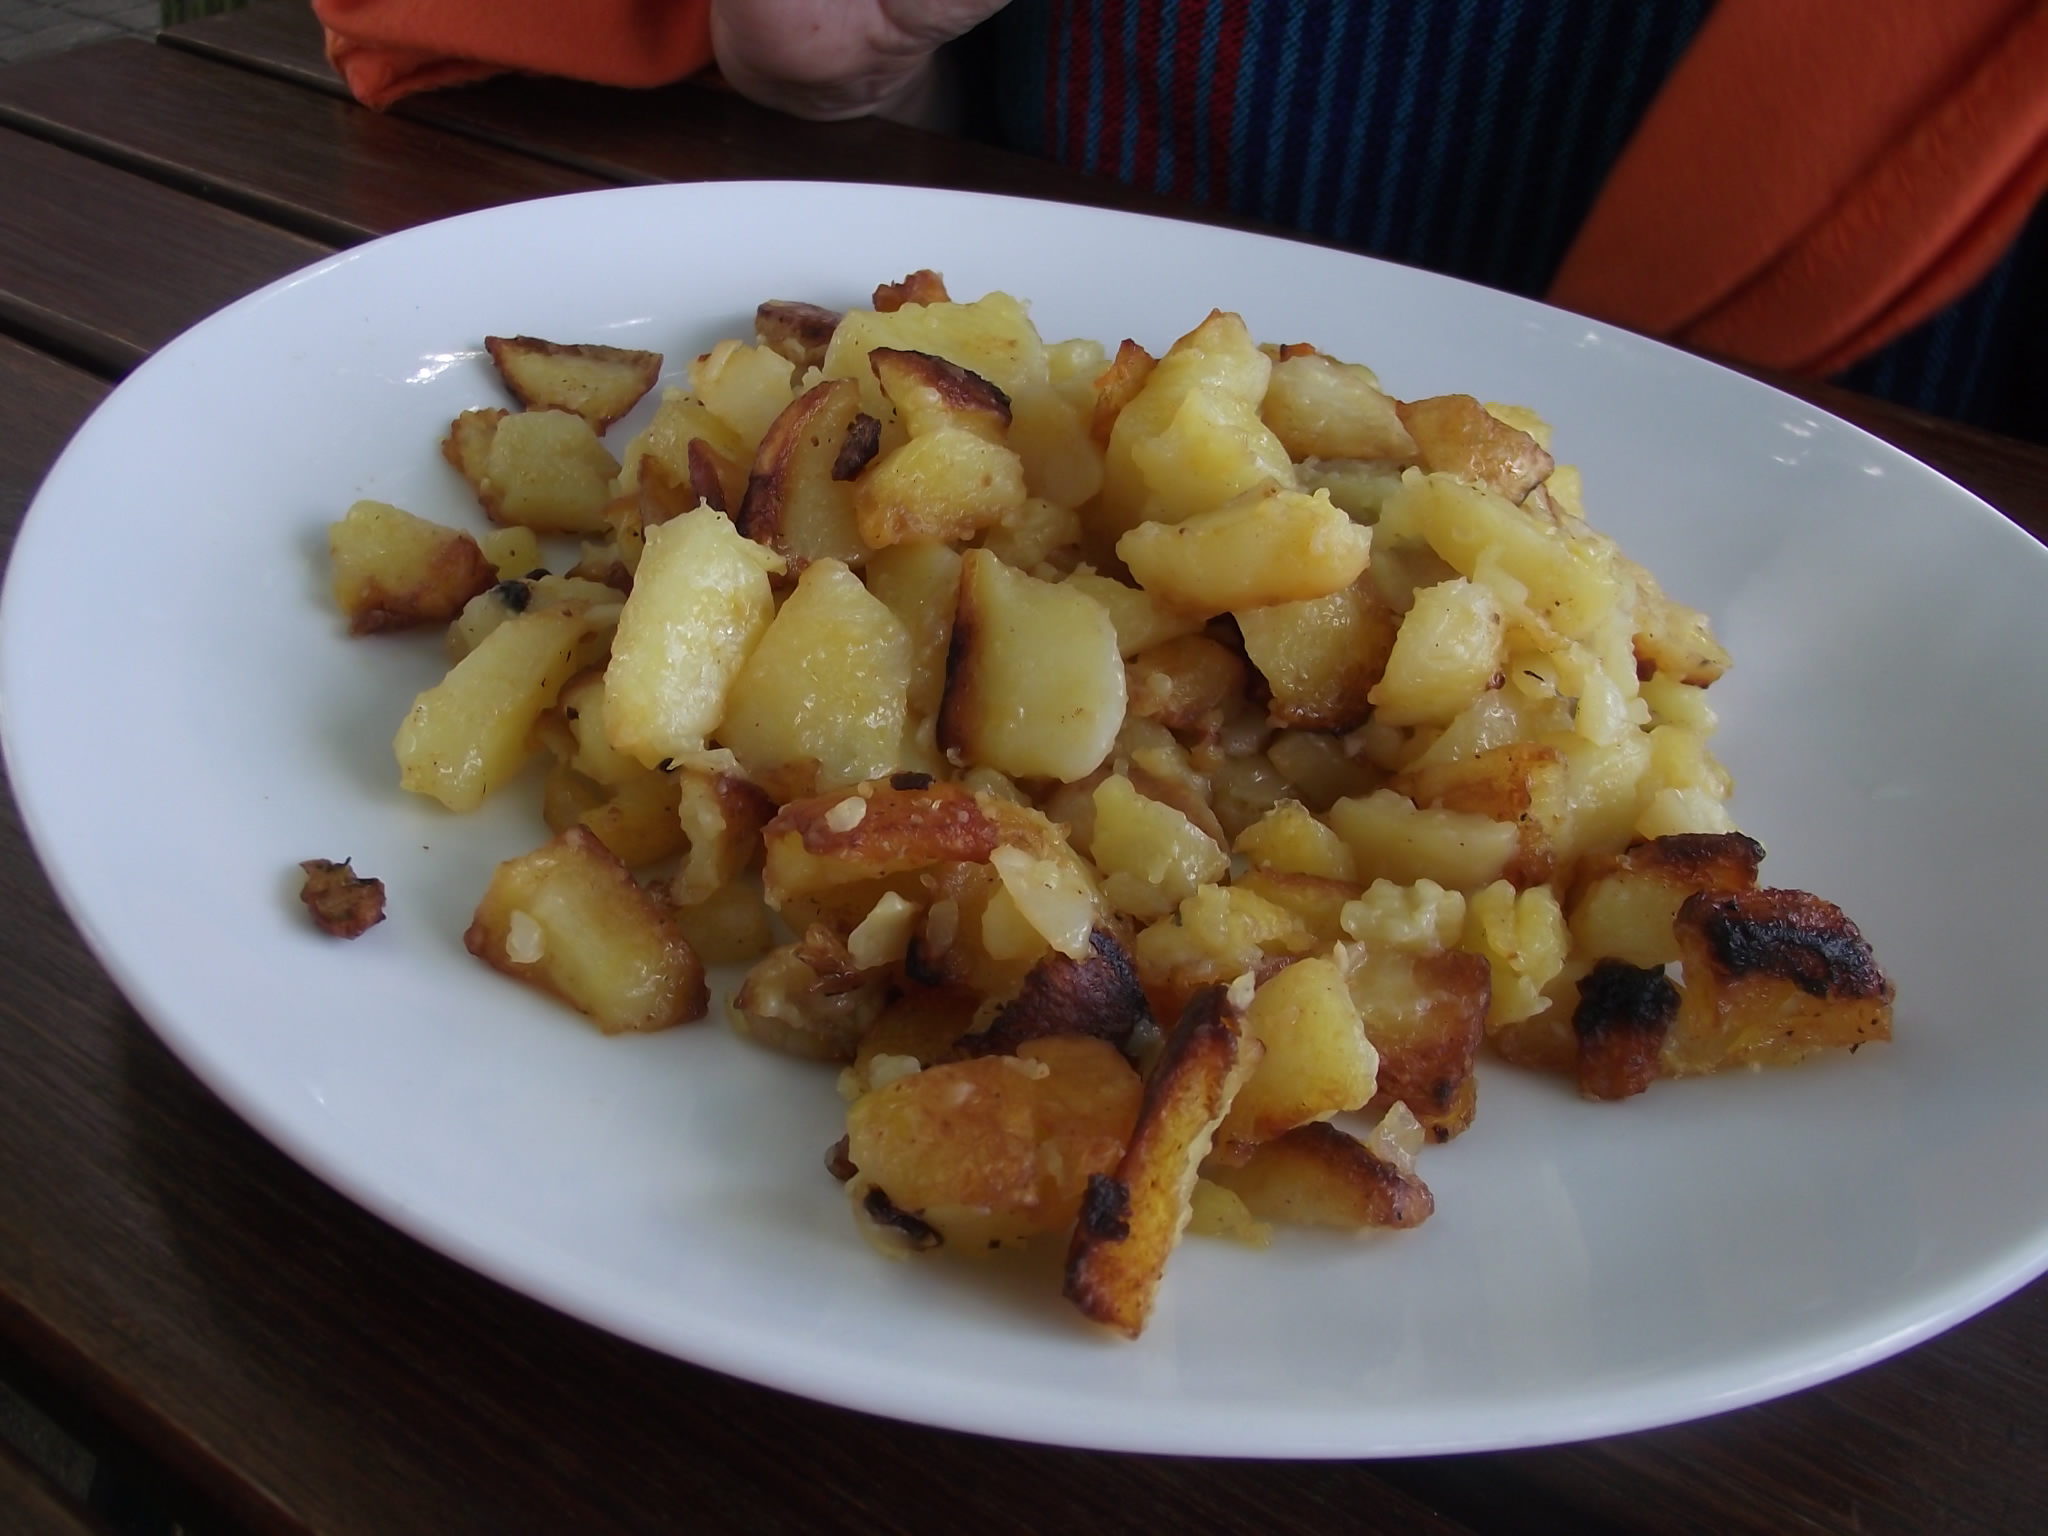 Doppelte Portion Bratkartoffeln für 6 €